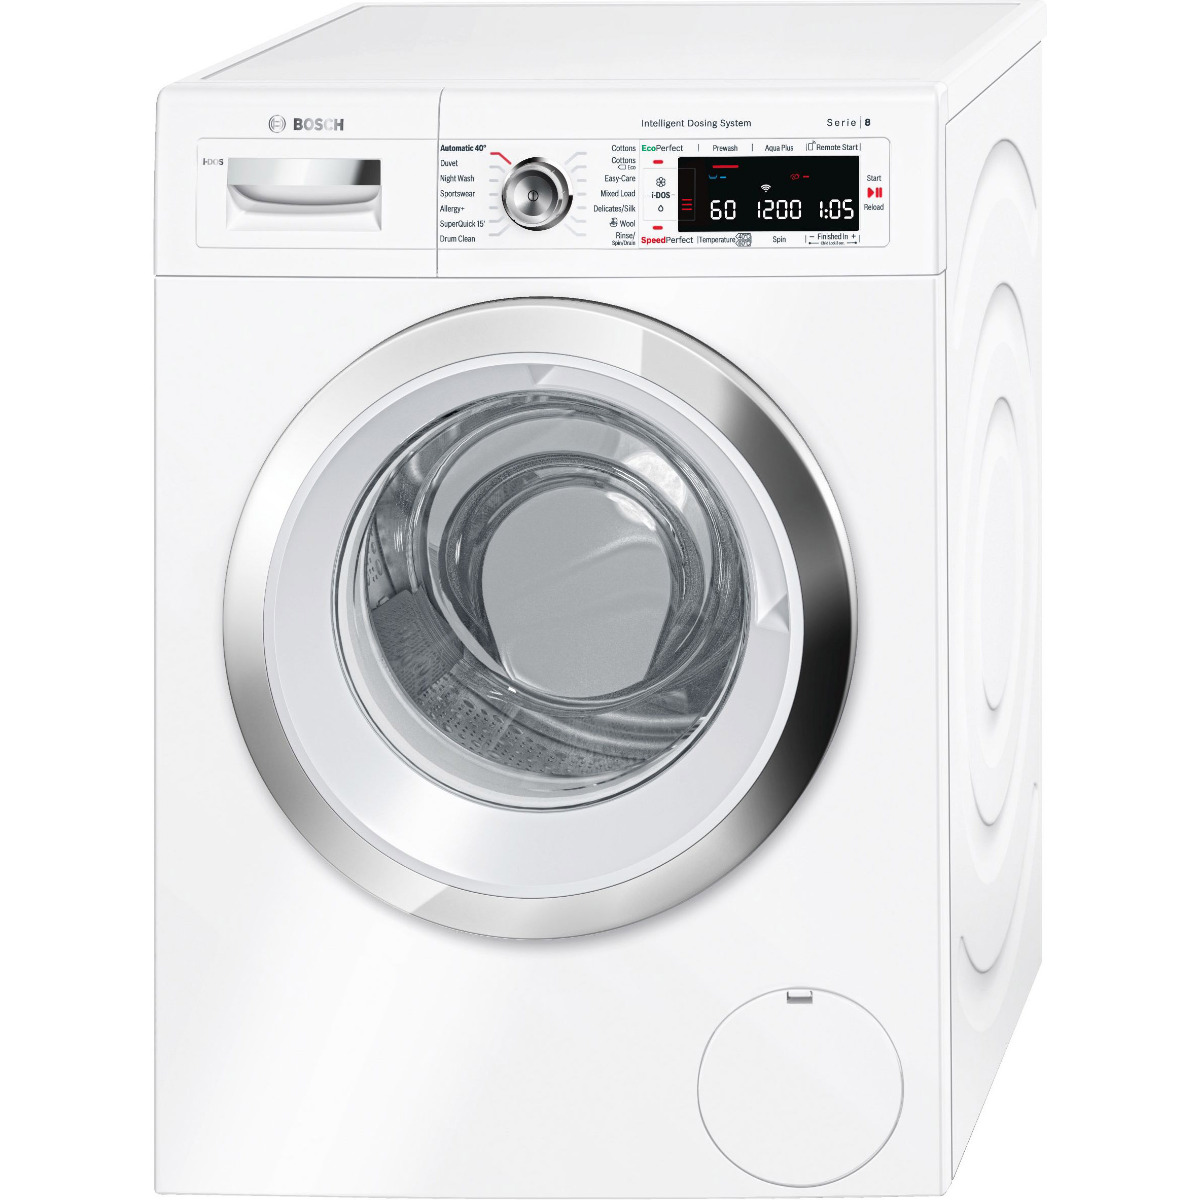 Bosch Serie 8 i-Dosâ¢ WAWH8660GB Wifi Connected 9Kg Washing Machine with 1400 rpm - White - A+++ Rated